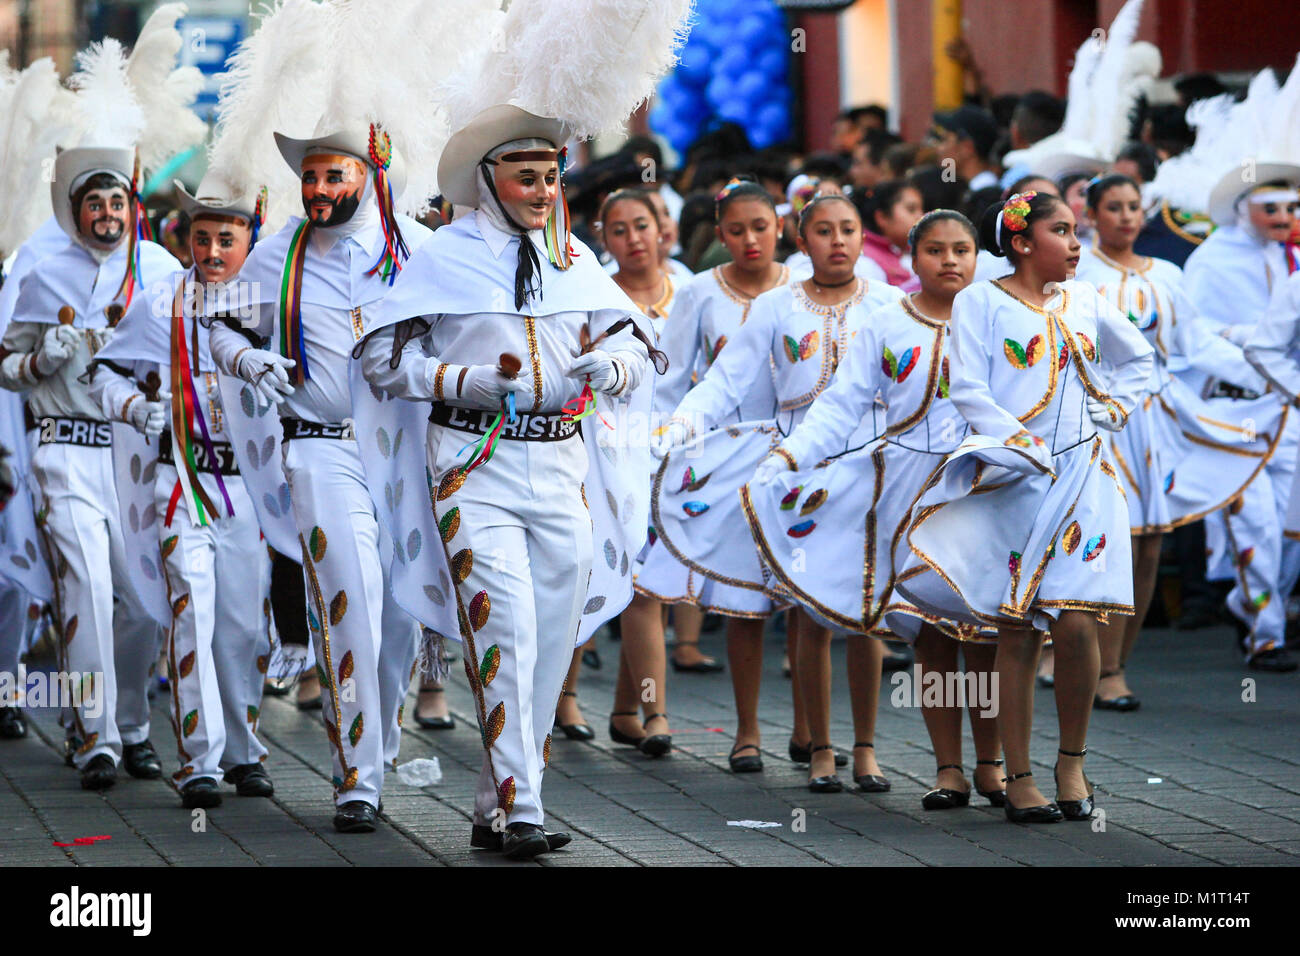 Filles mexicaines habillés avec des costumes traditionnels mexicains au défilé annuel pour célébrer le début de l'éditorial, Carnaval mexicain utiliser uniquement Banque D'Images